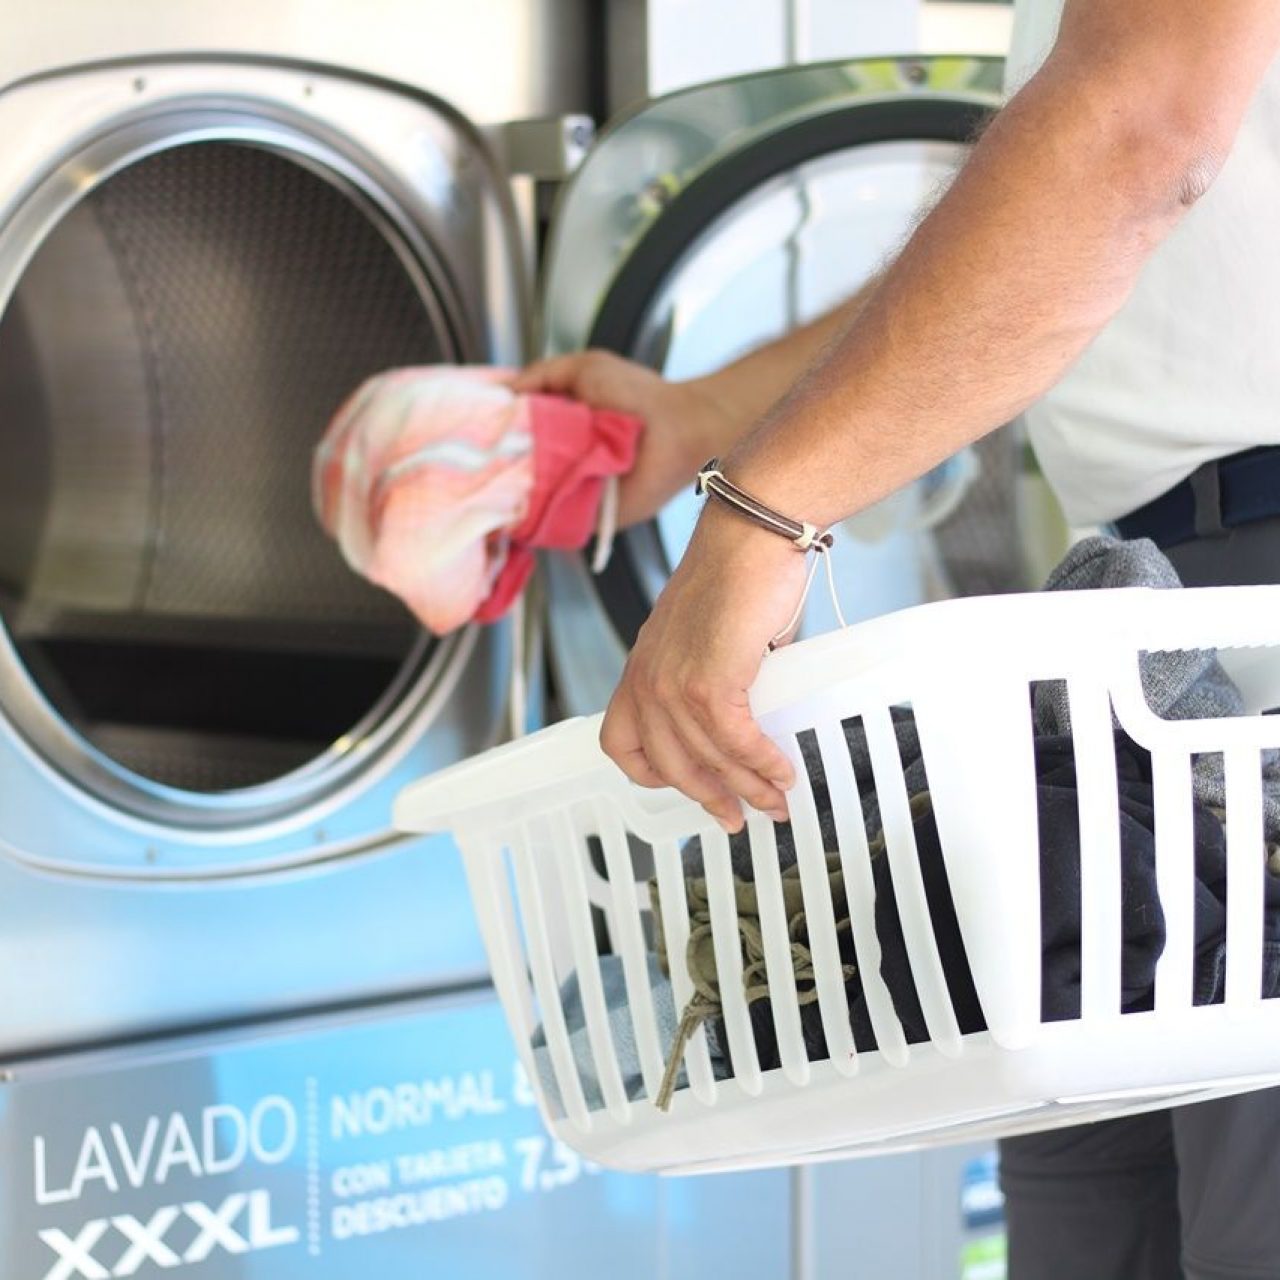 Las vacaciones y las lavanderías autoservicio La Wash